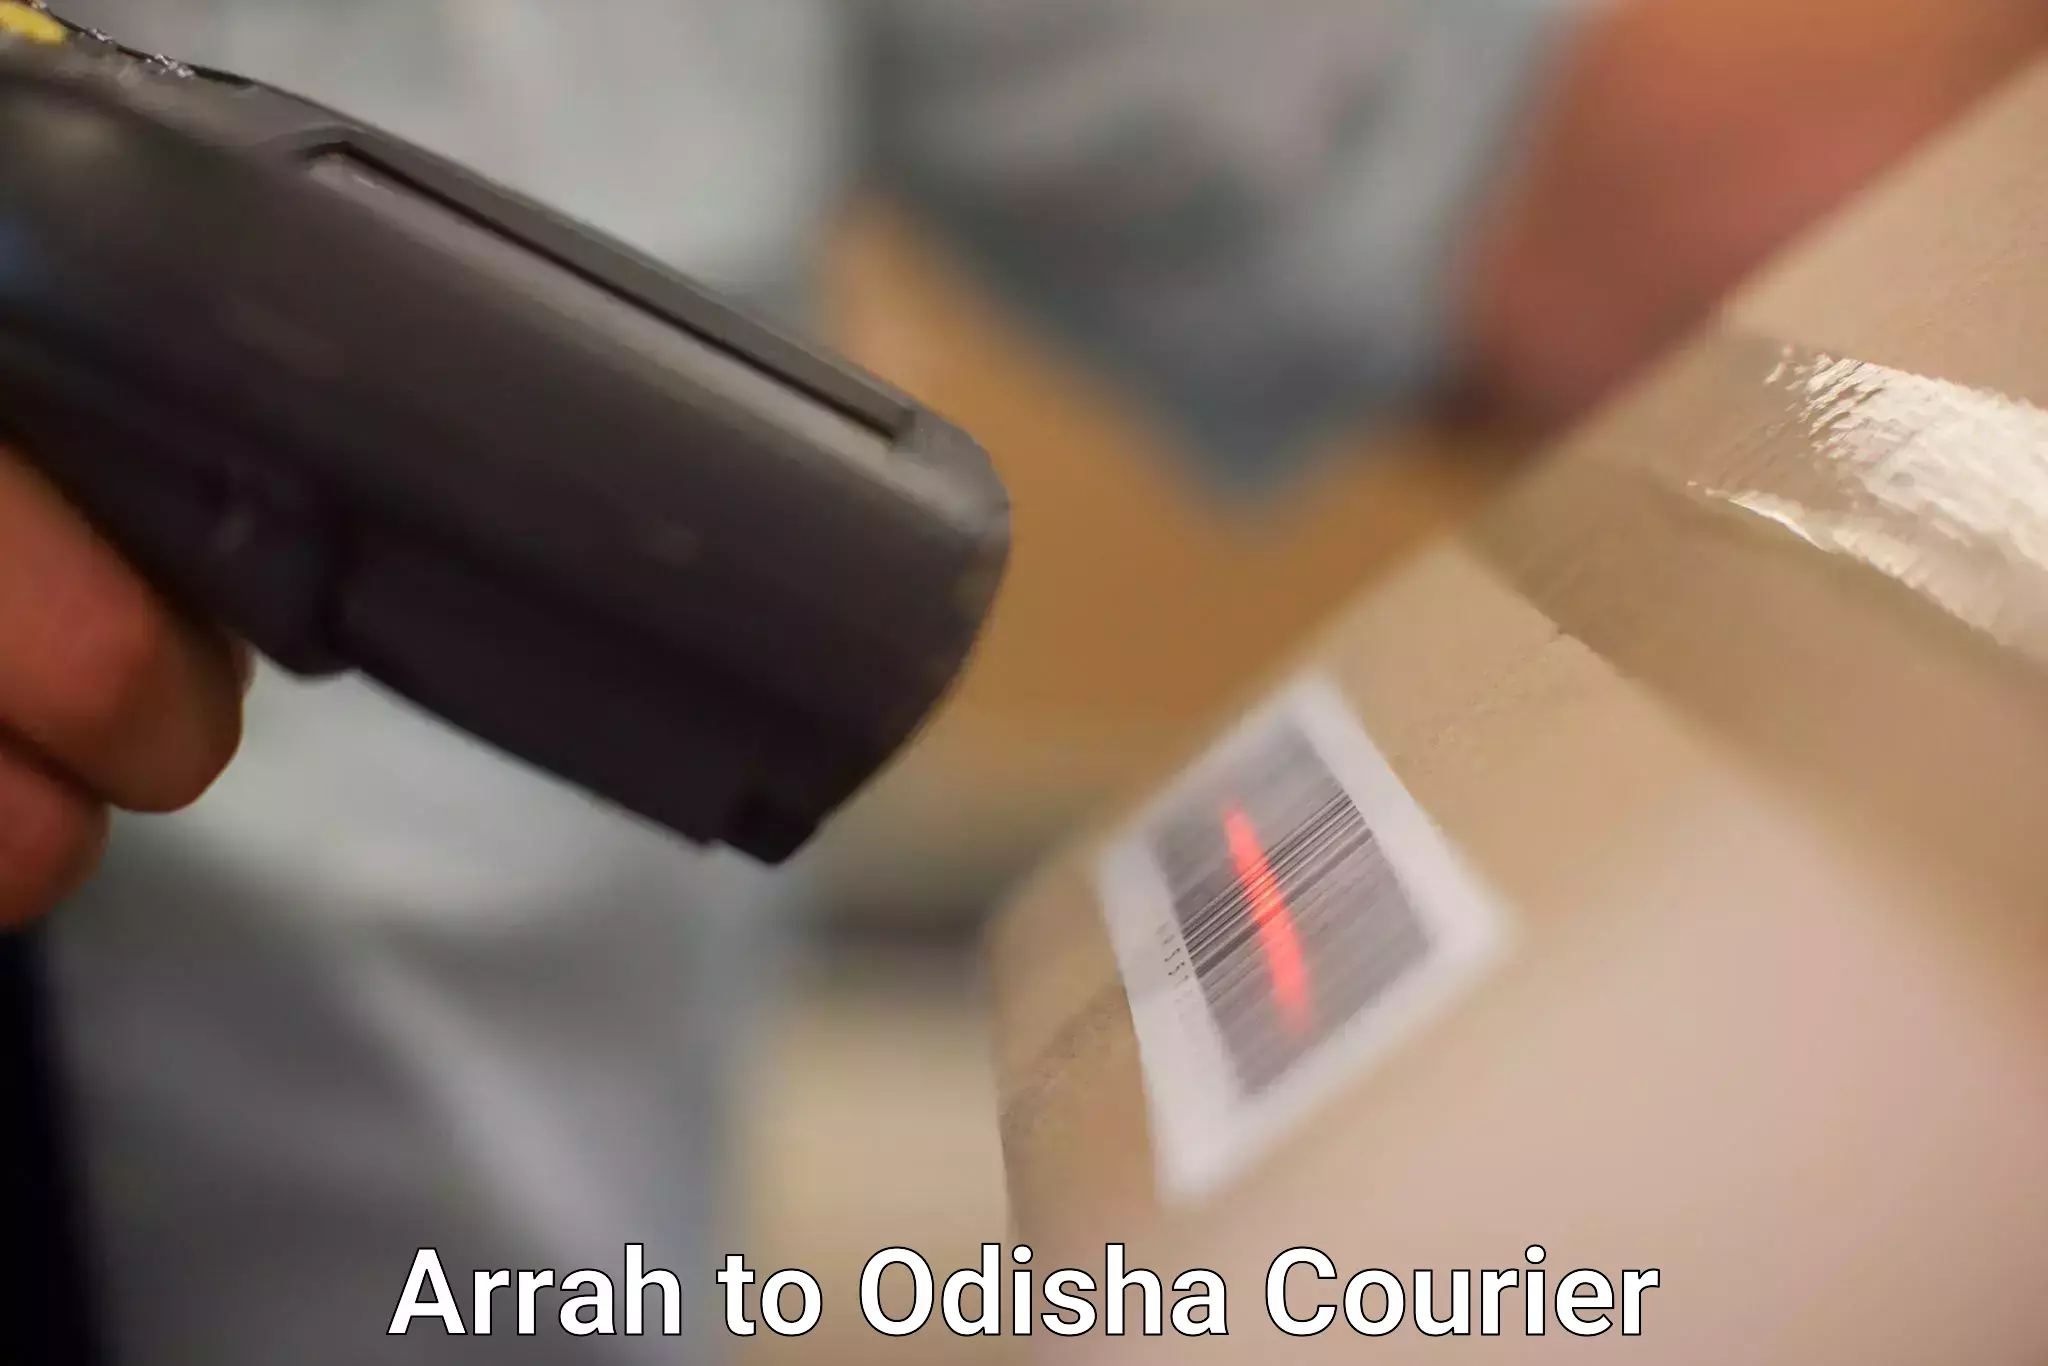 Courier service comparison Arrah to Muribahal